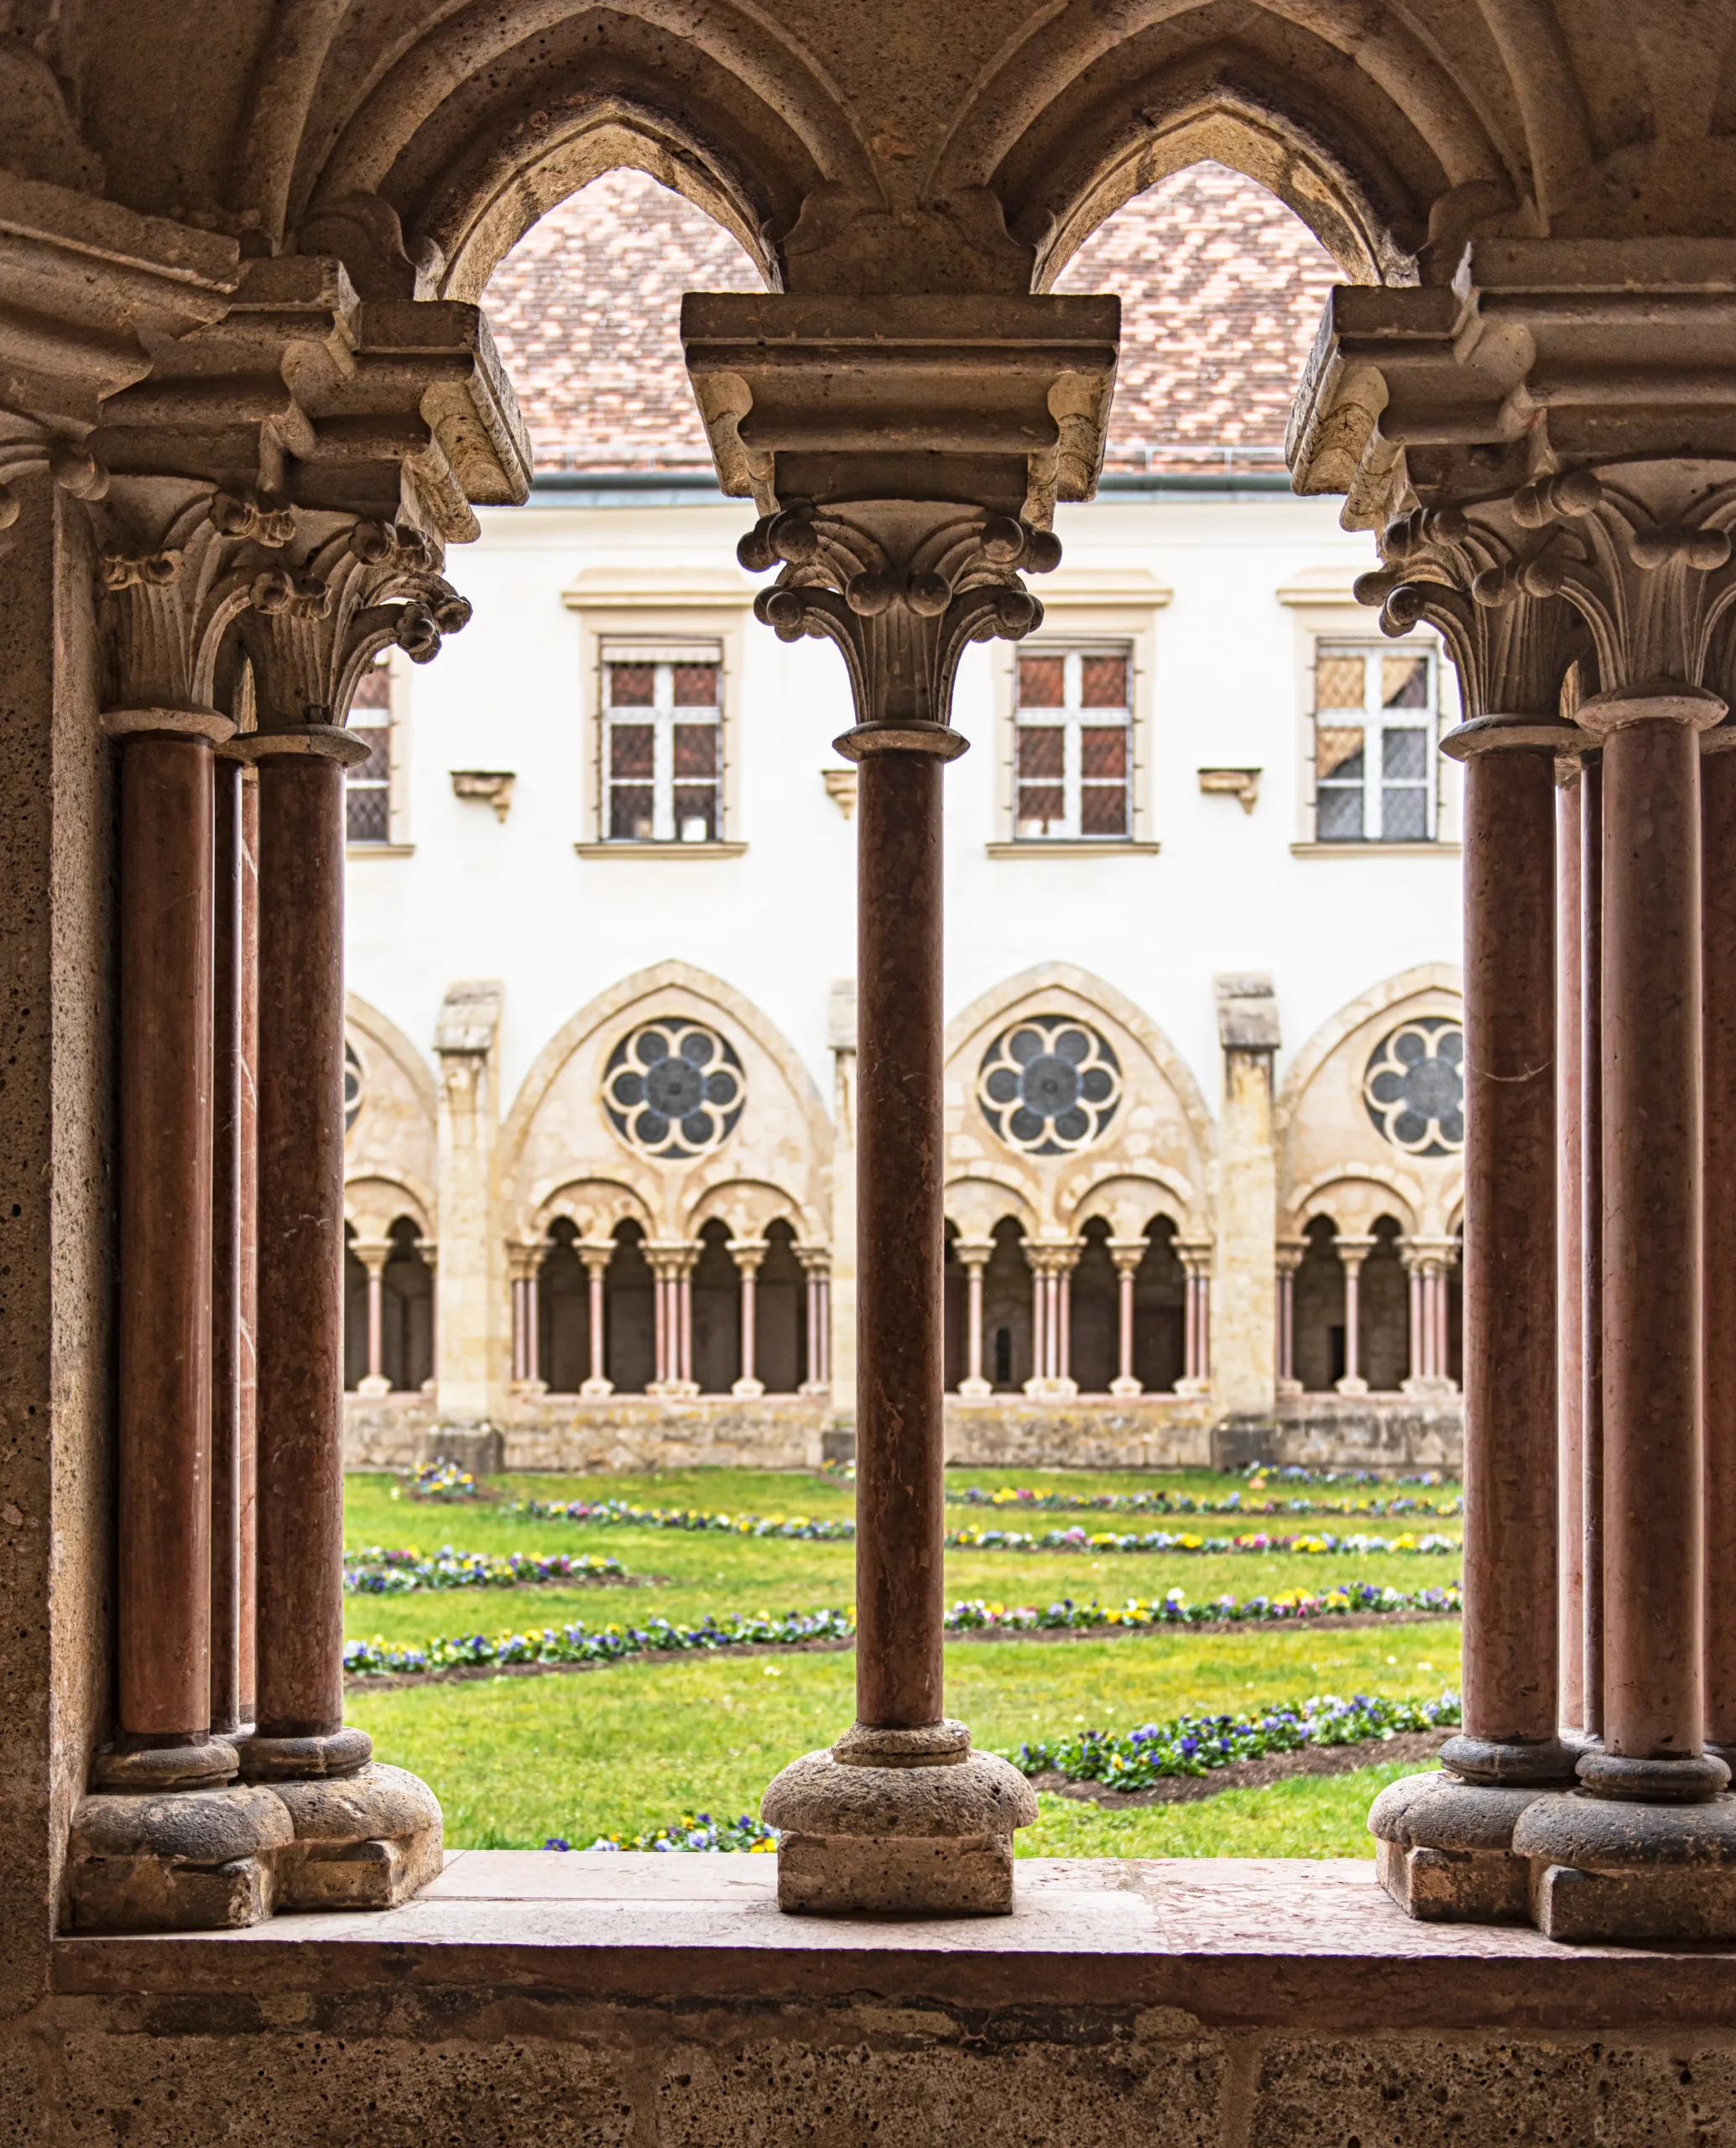 Inner Yard and View of the Cistercian monastery Heiligenkreuz abbey in Heiligenkreuz, Austria